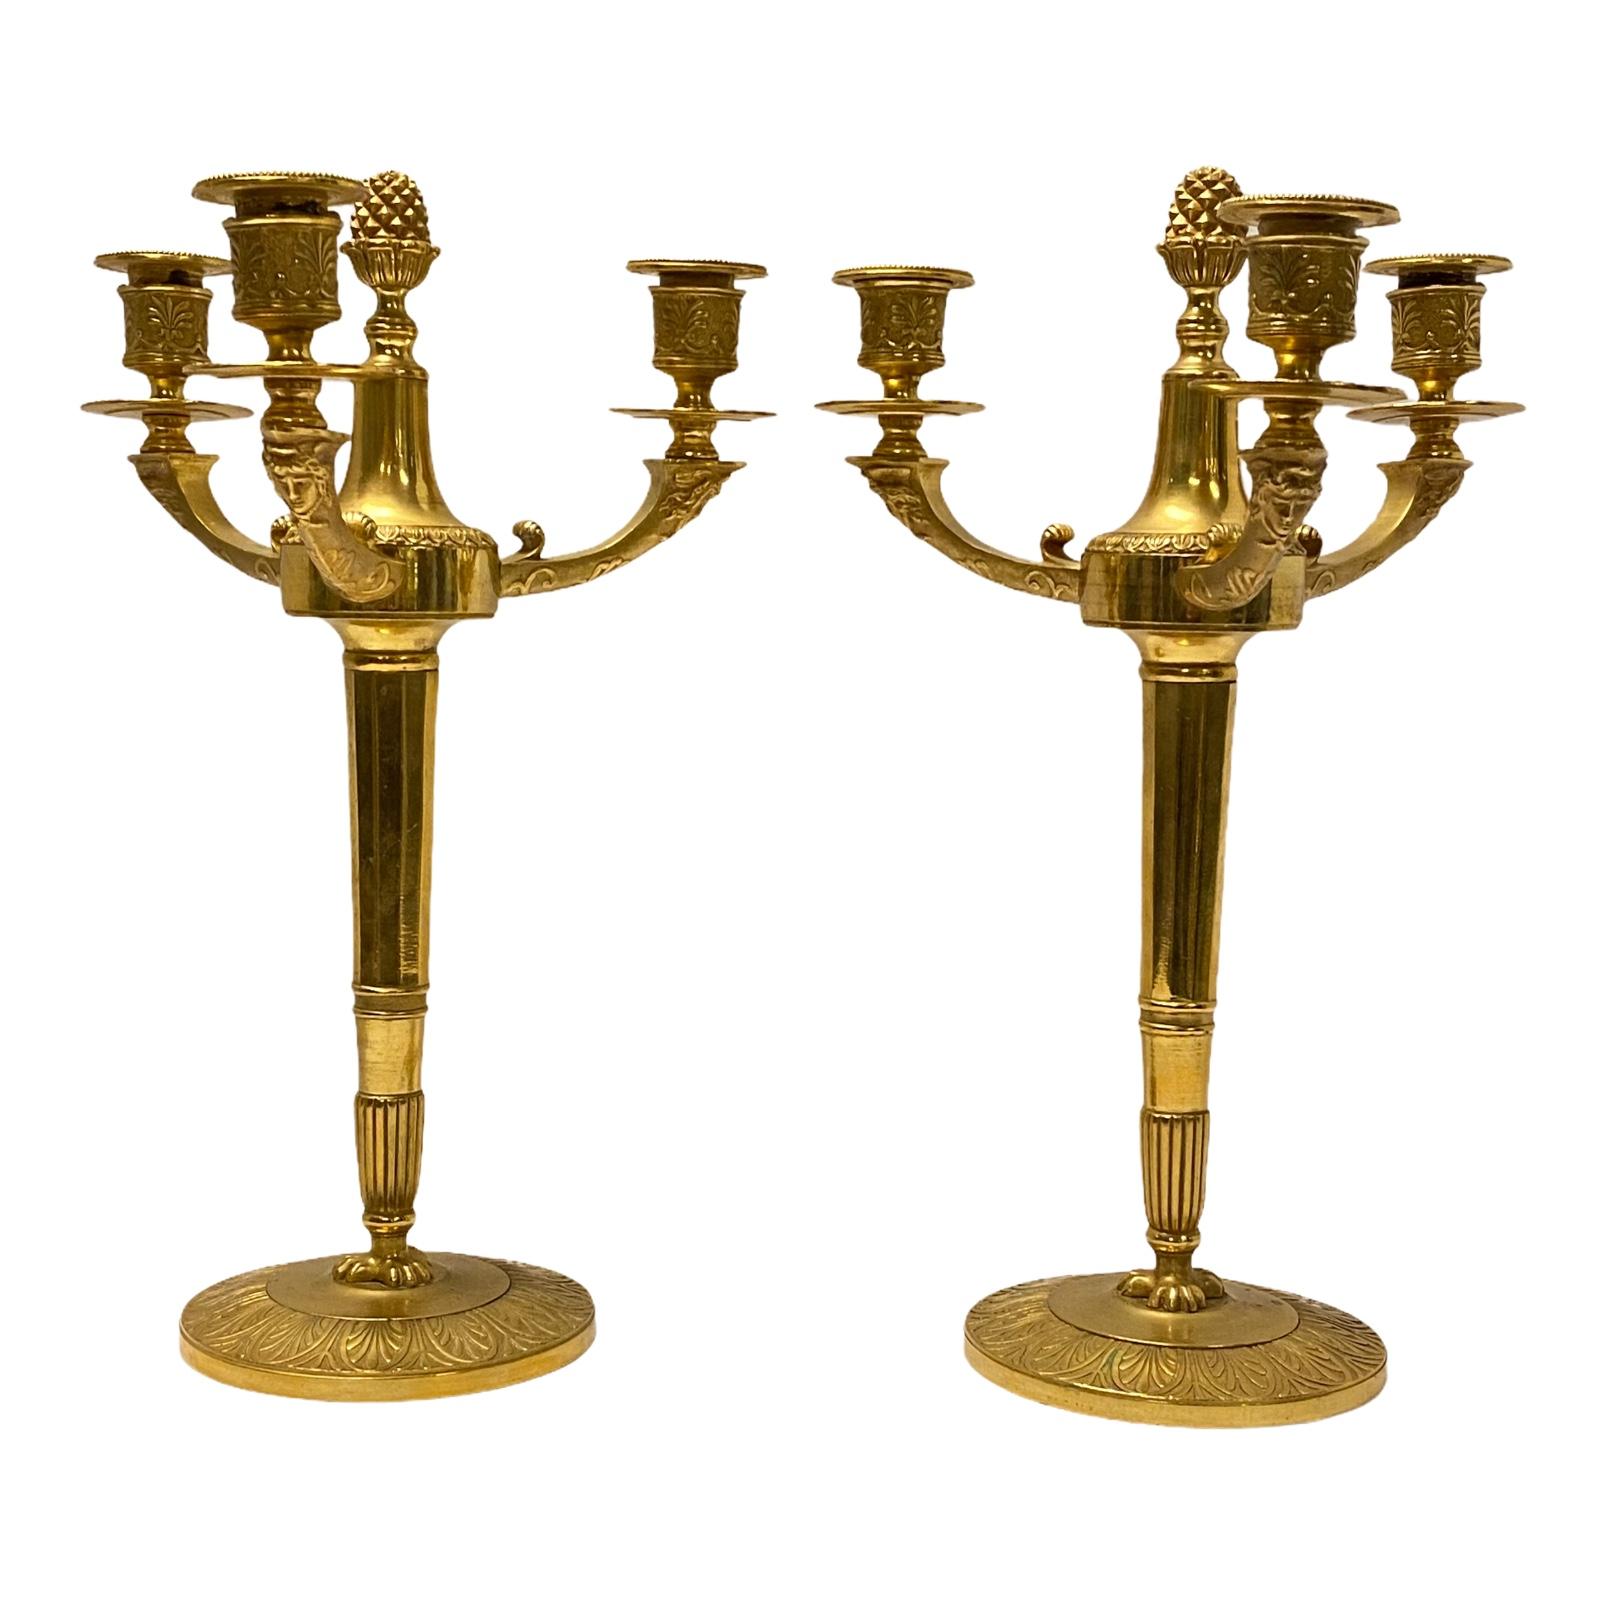 Paire de chandeliers en bronze doré de style Empire du XIXe siècle